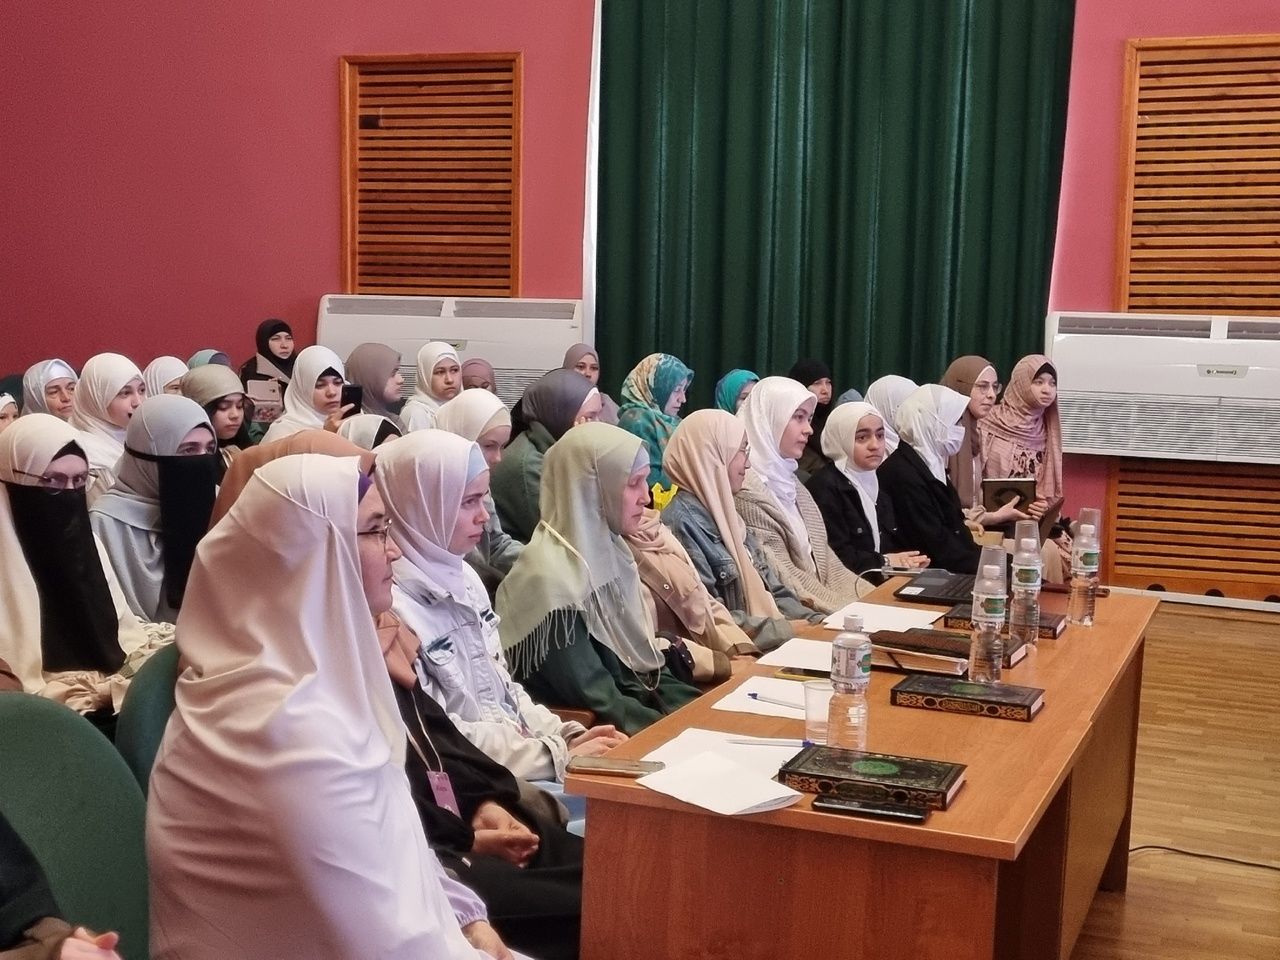 Открытие Всероссийского конкурса «Халиса» чтиц Корана среди женщин и девушек состоялось в Уруссу